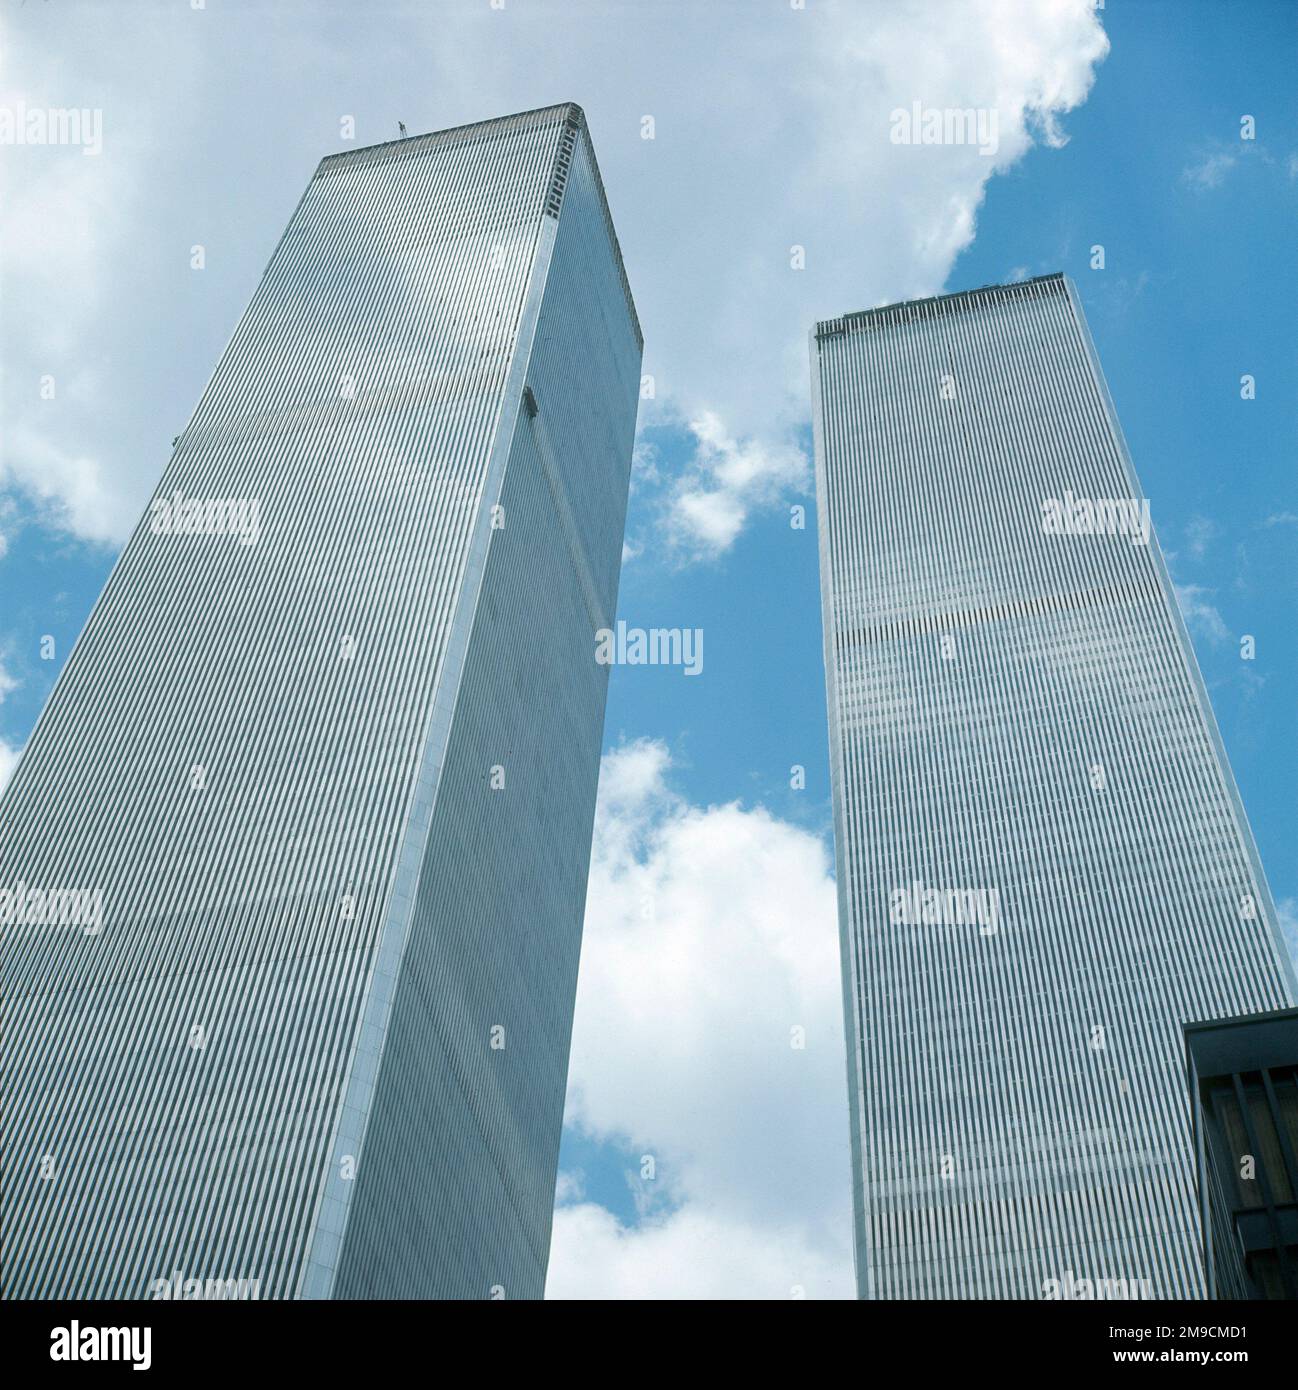 Le torri gemelle del World Trade Center, alte 110 piani, diversi anni prima che fossero distrutte dai terroristi nel settembre 2001. Foto Stock